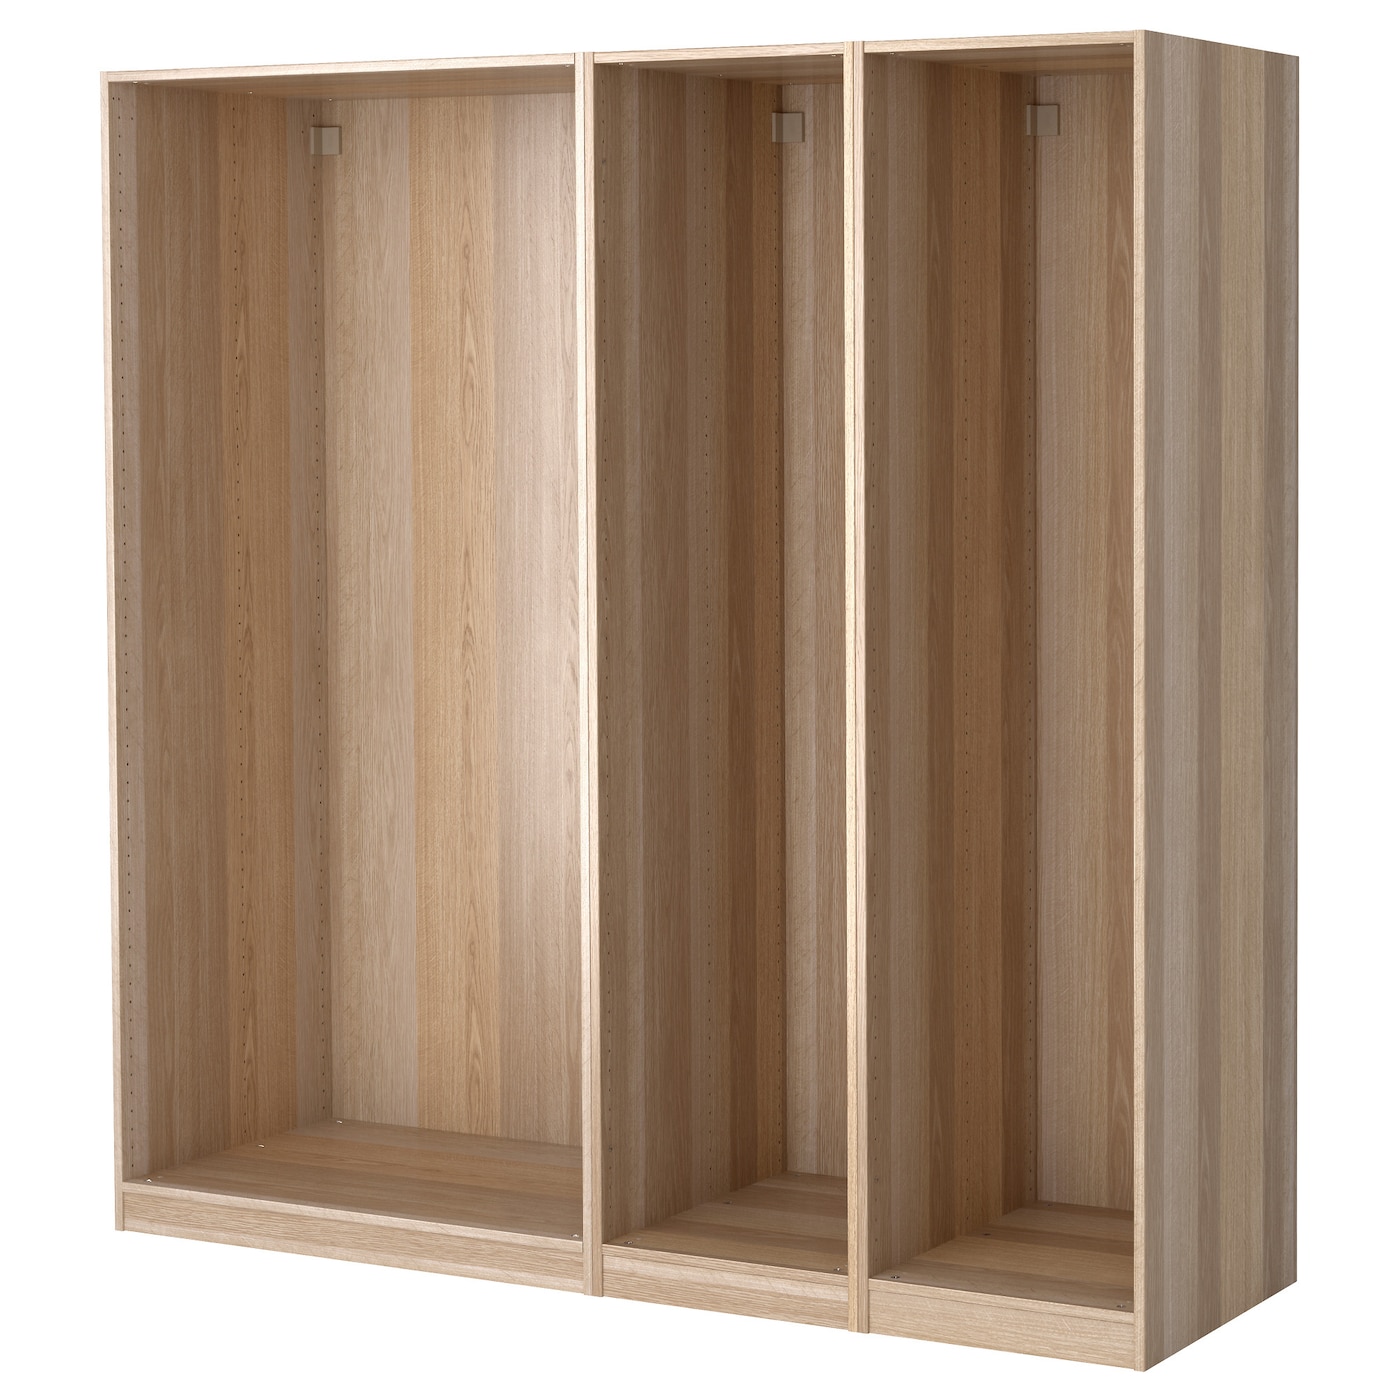 3 каркаса гардероба - PAX IKEA/ ПАКС ИКЕА, 200x58x201  см, коричневый